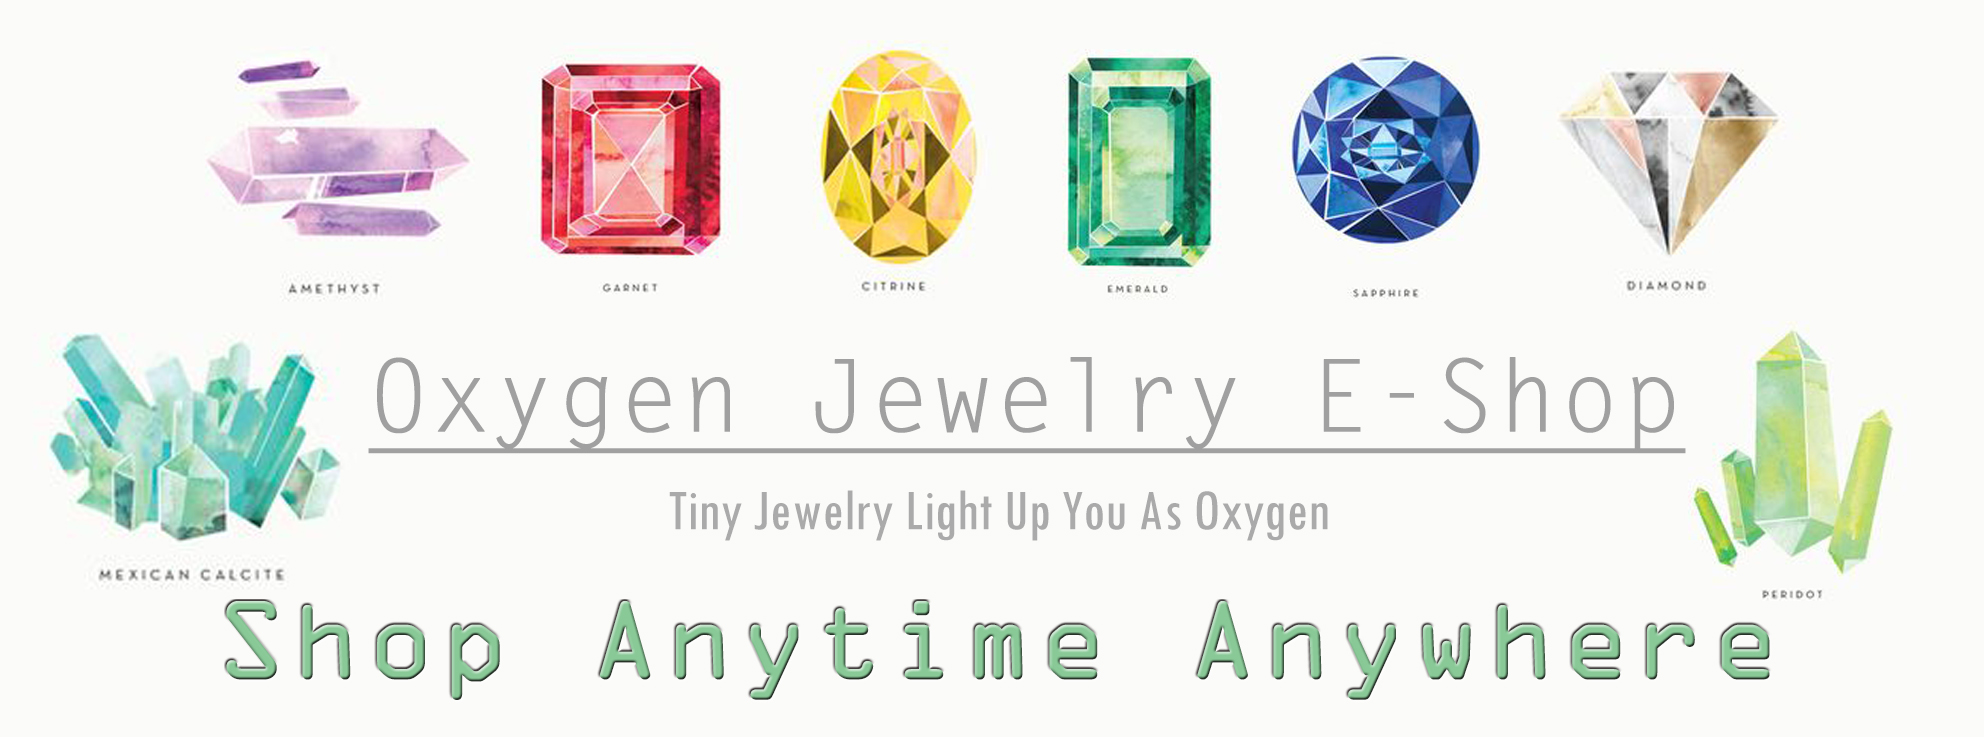 Oxygen Jewelry Online E-Shop